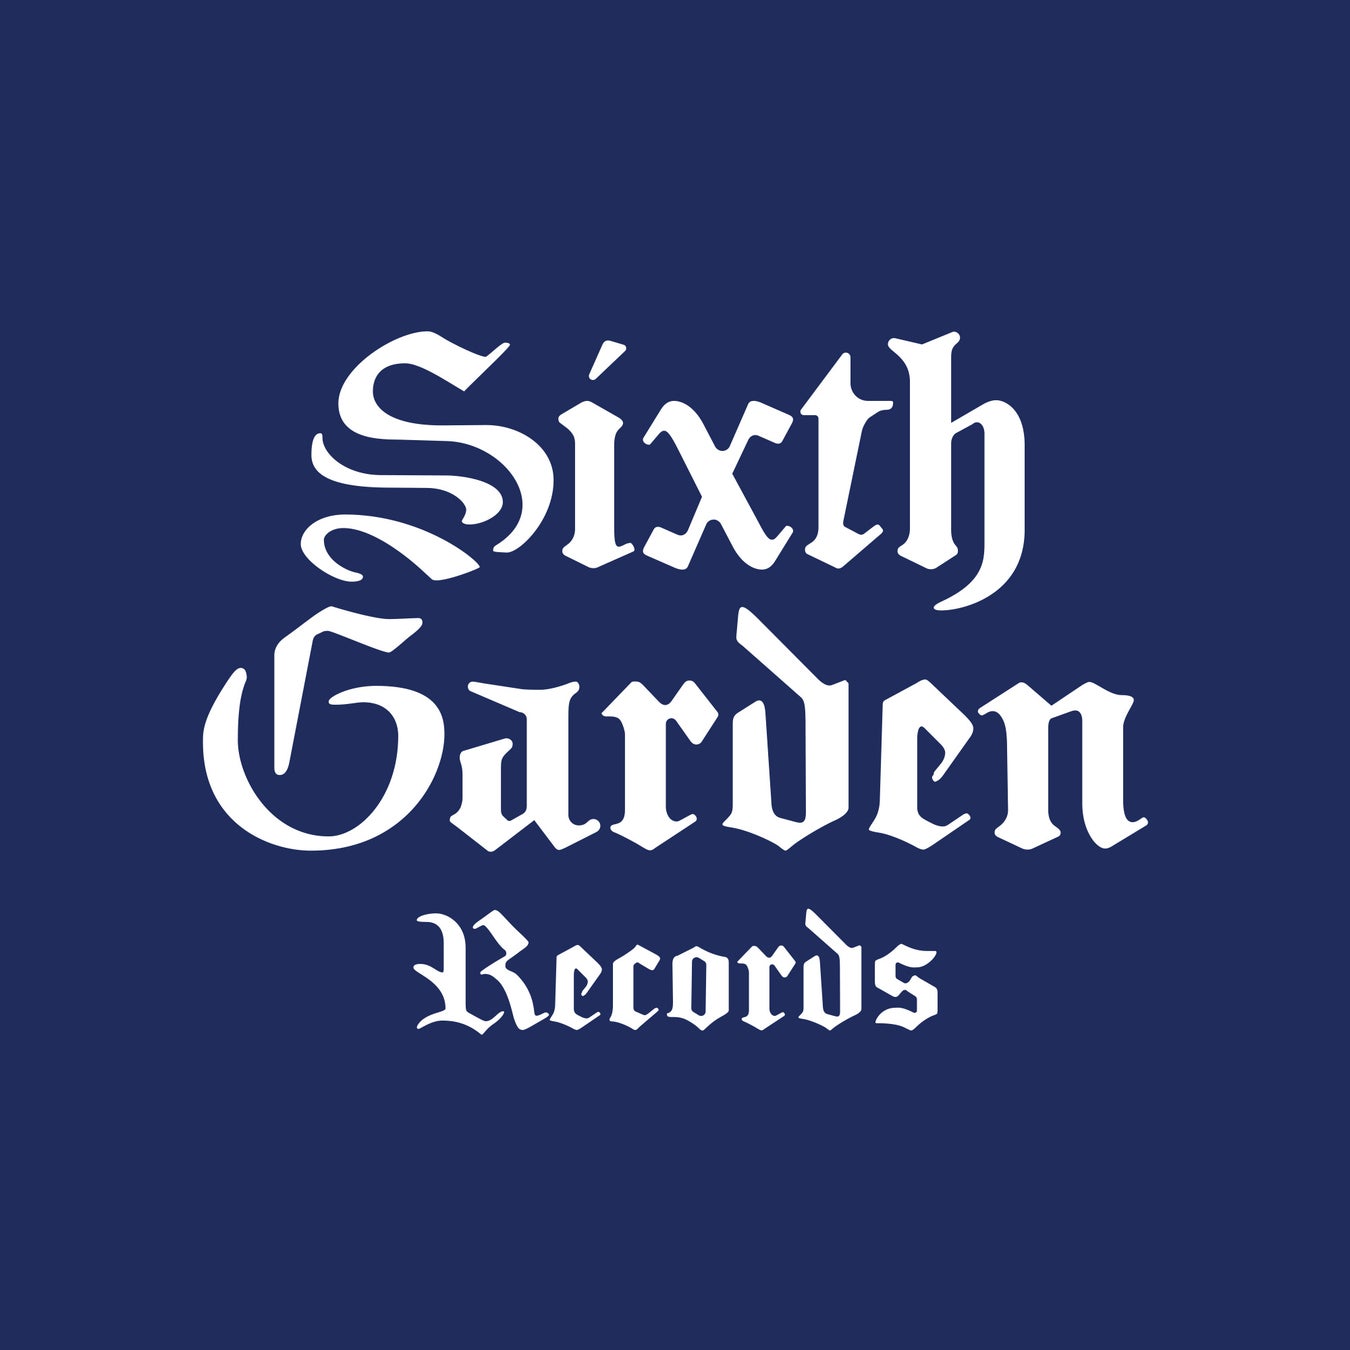 Sixth Garden Records